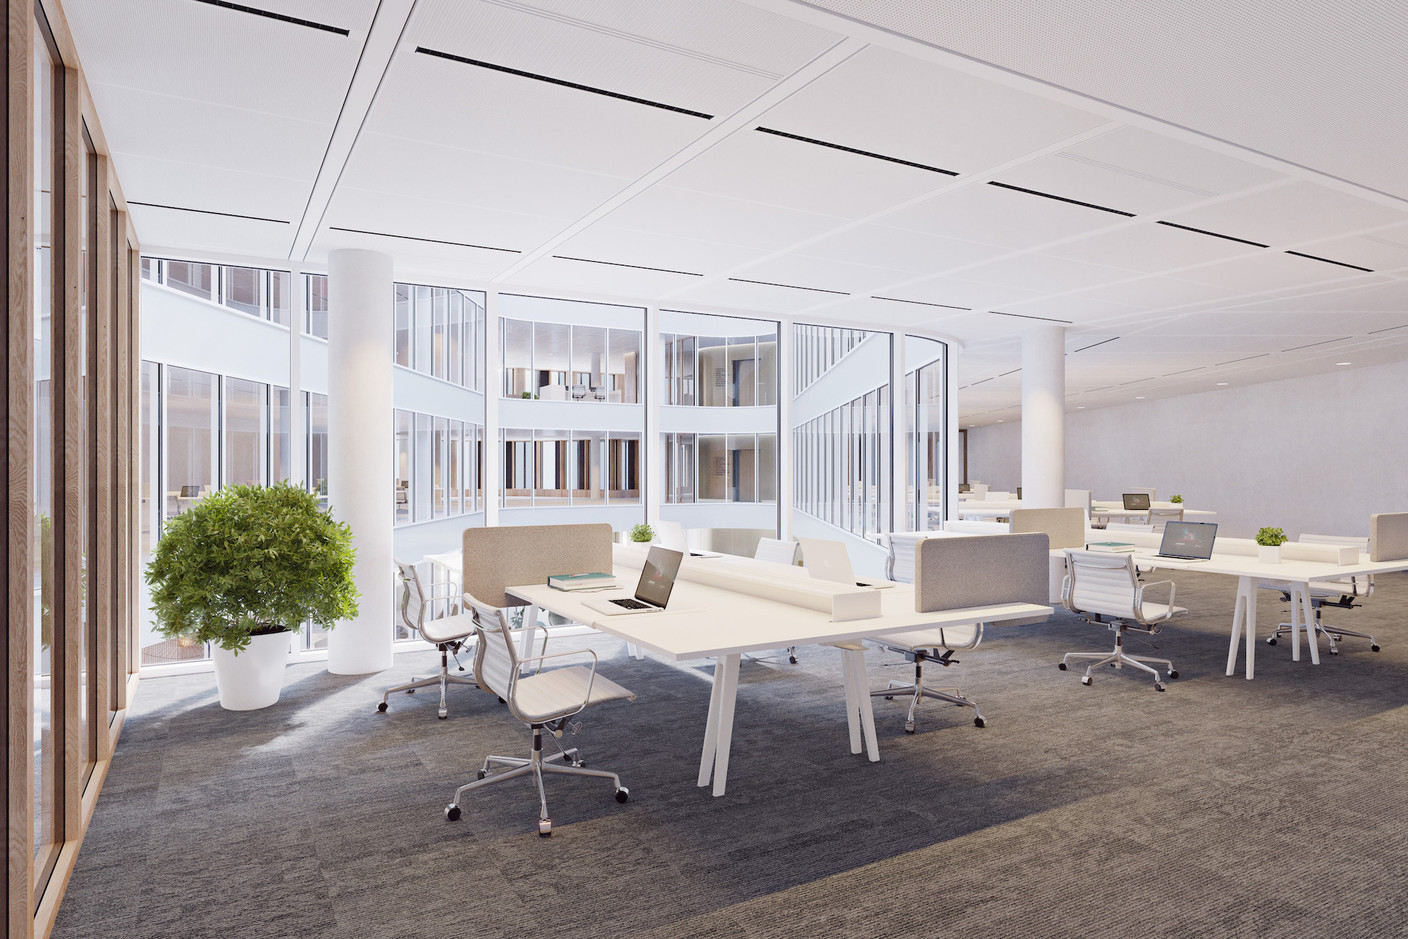 Les espaces de bureaux seront flexibles et adaptables aux souhaits des utilisateurs. (Illustrations : IKO Real Estate-Thomas & Piron)